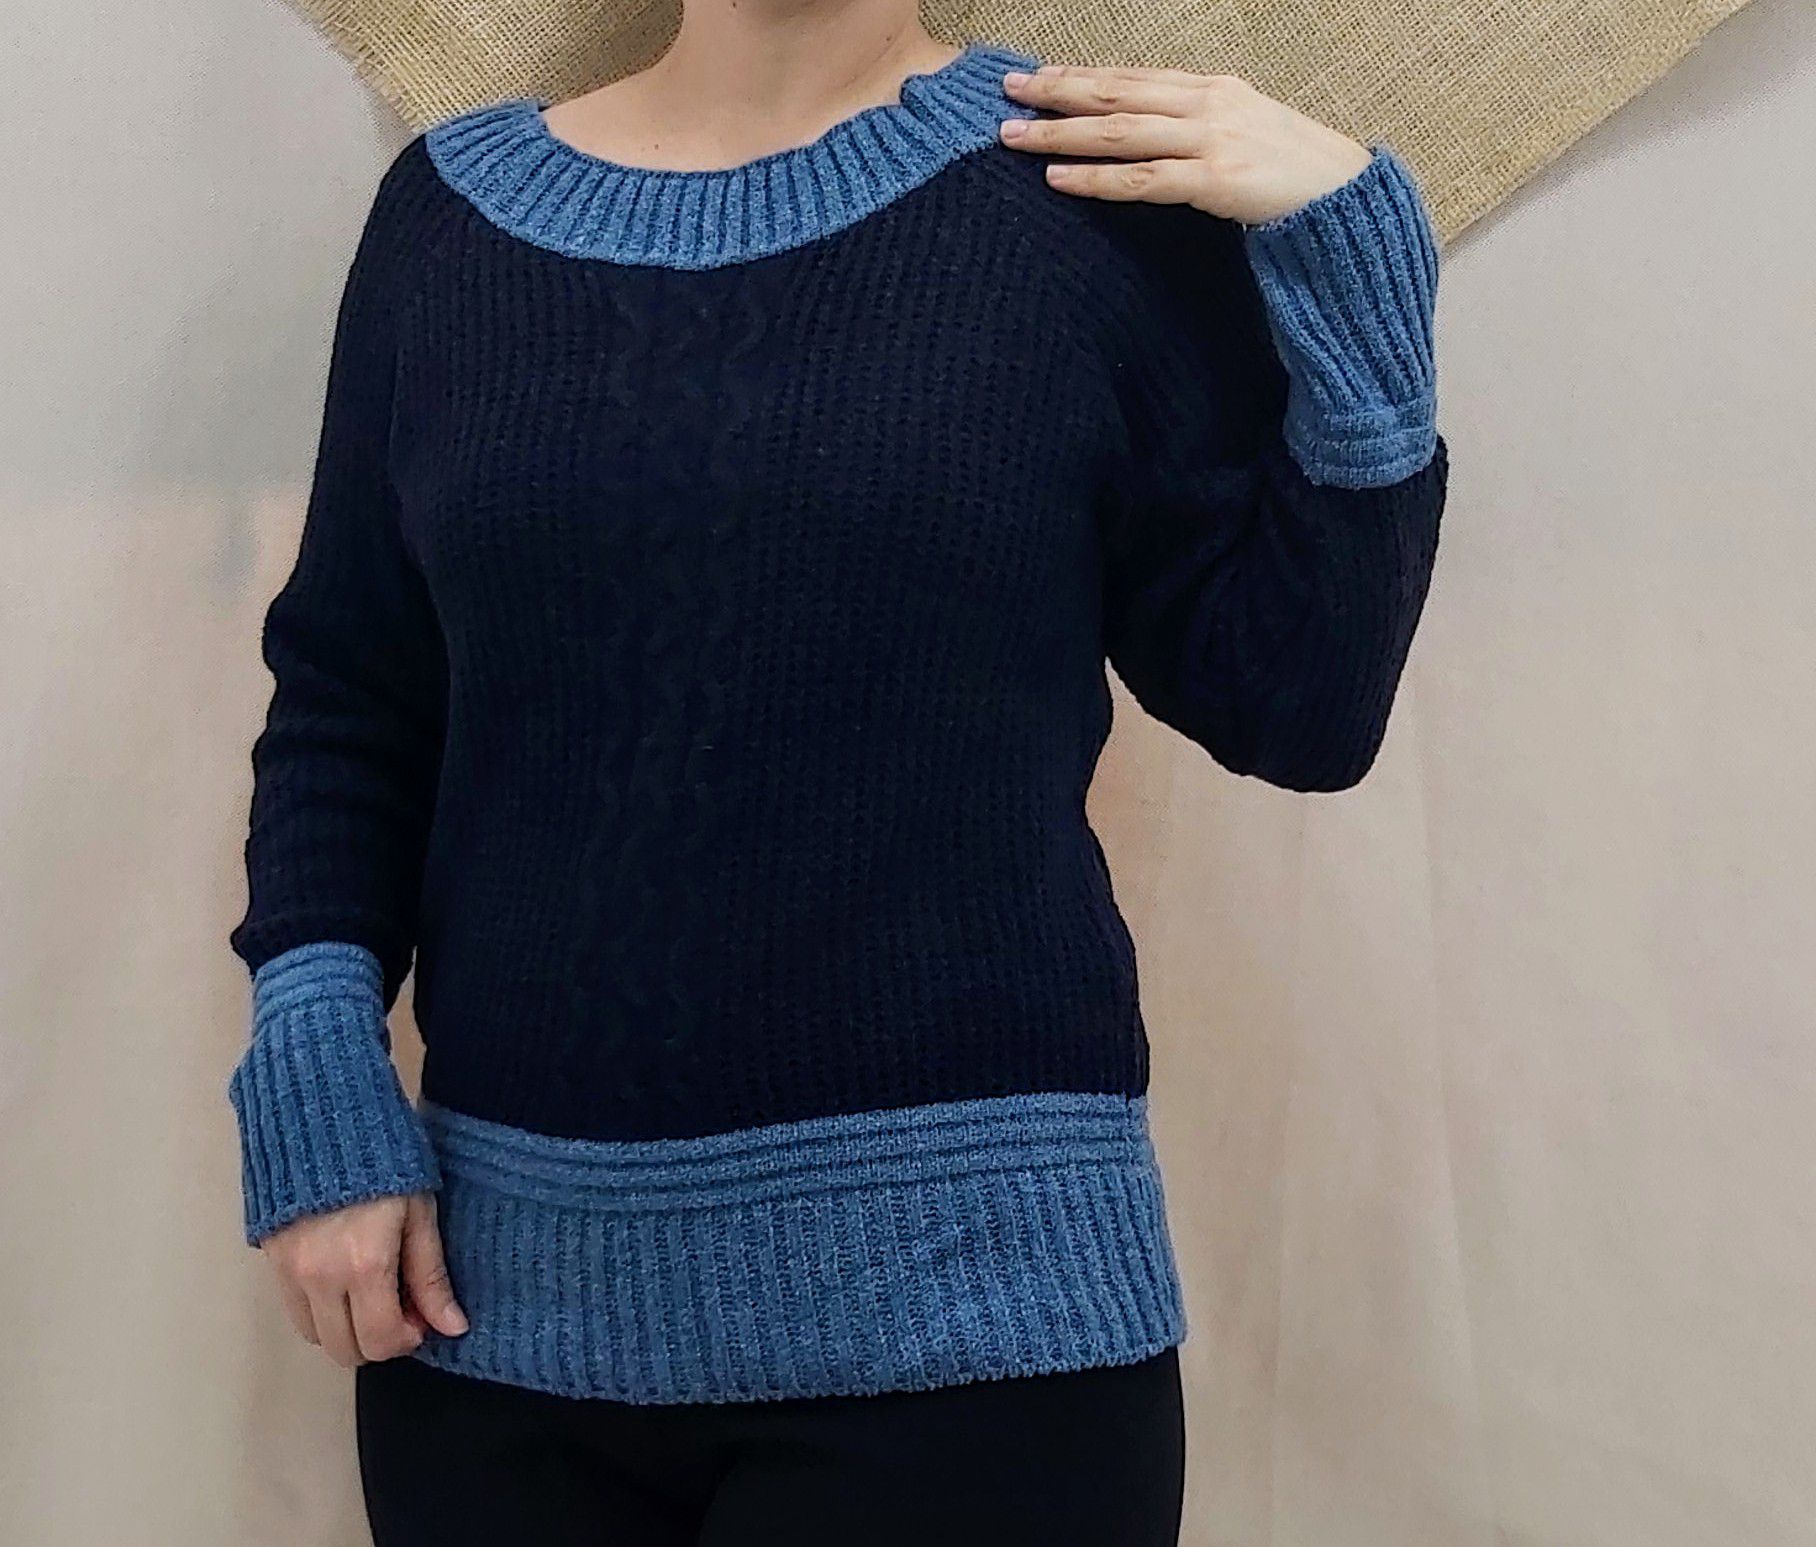 Blusa de tricot azul marinho com detalhes nas mangas e barra - Josefa Lopes  - Para você que gosta de versatilidade, elegância, conforto e qualidade,  aqui você encontrará looks atemporais